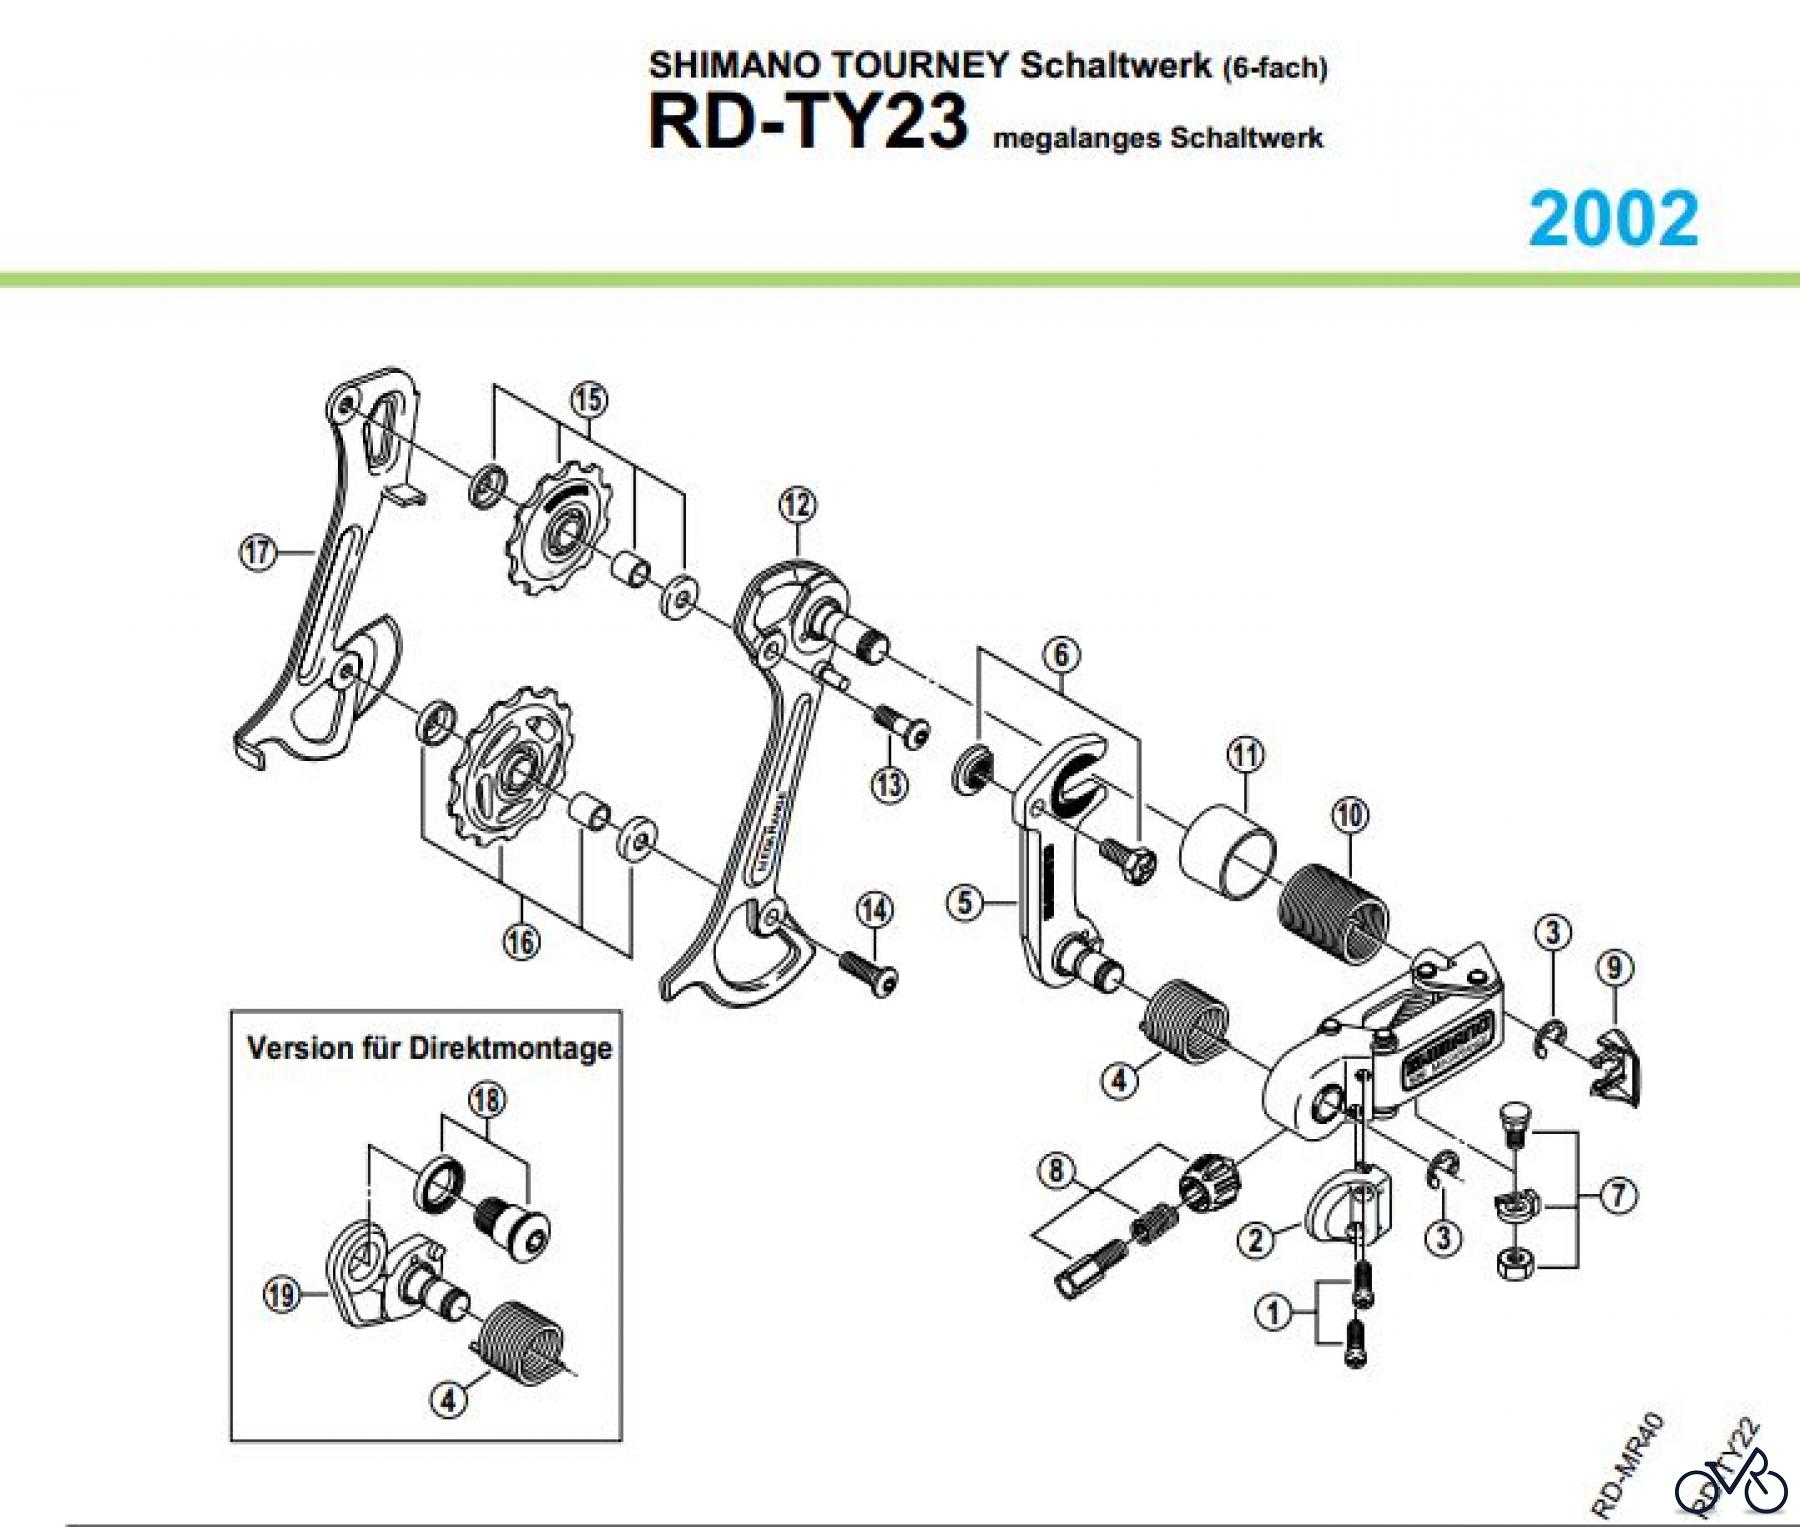  Shimano RD Rear Derailleur - Schaltwerk RD-TY23-02